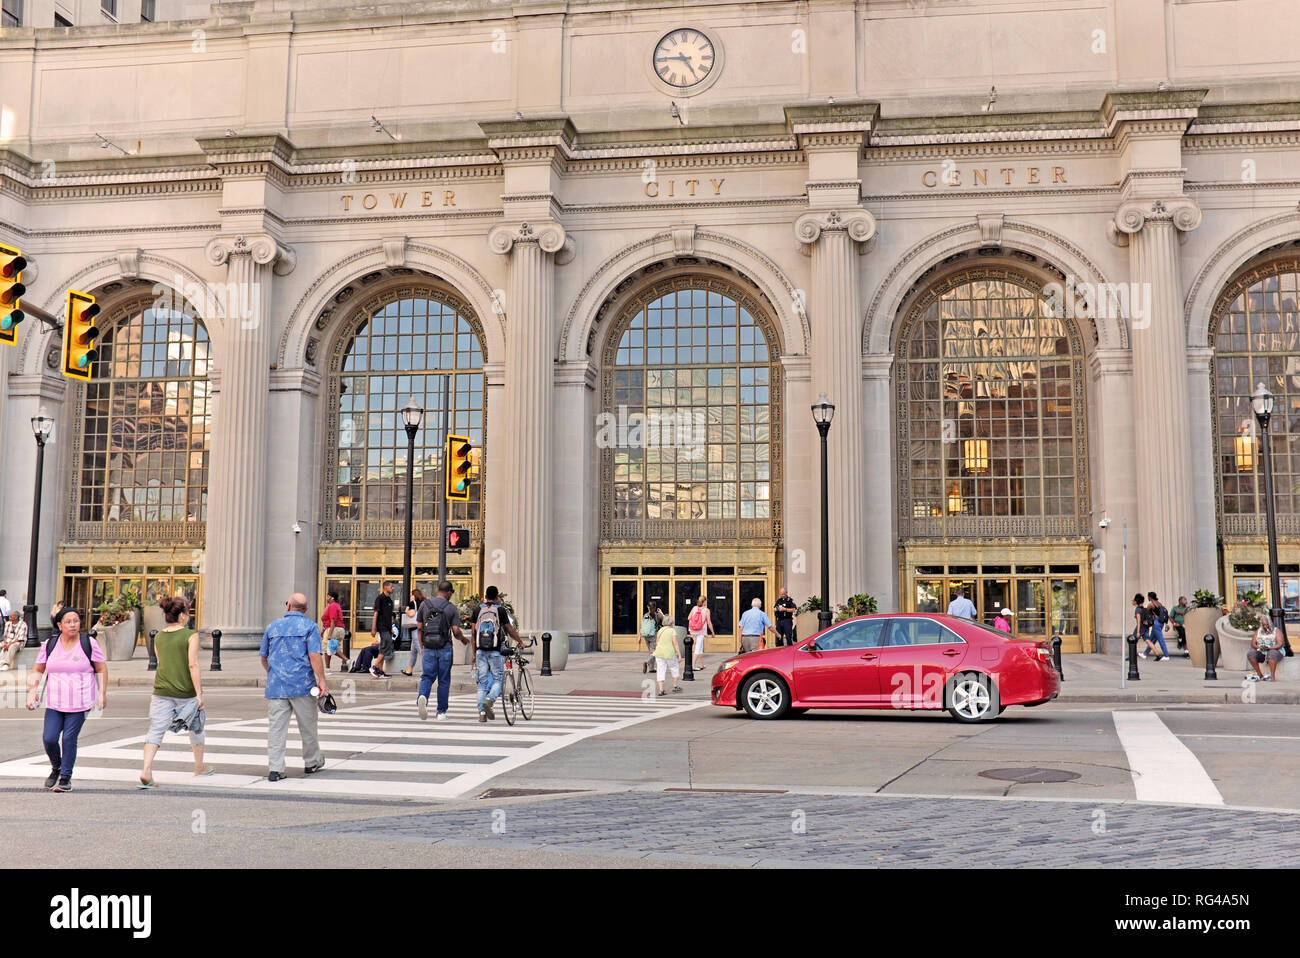 La circulation des piétons sur la place publique dans l'avant de la Tour Centre-ville en centre-ville de Cleveland, Ohio, USA au cours de l'été. Banque D'Images